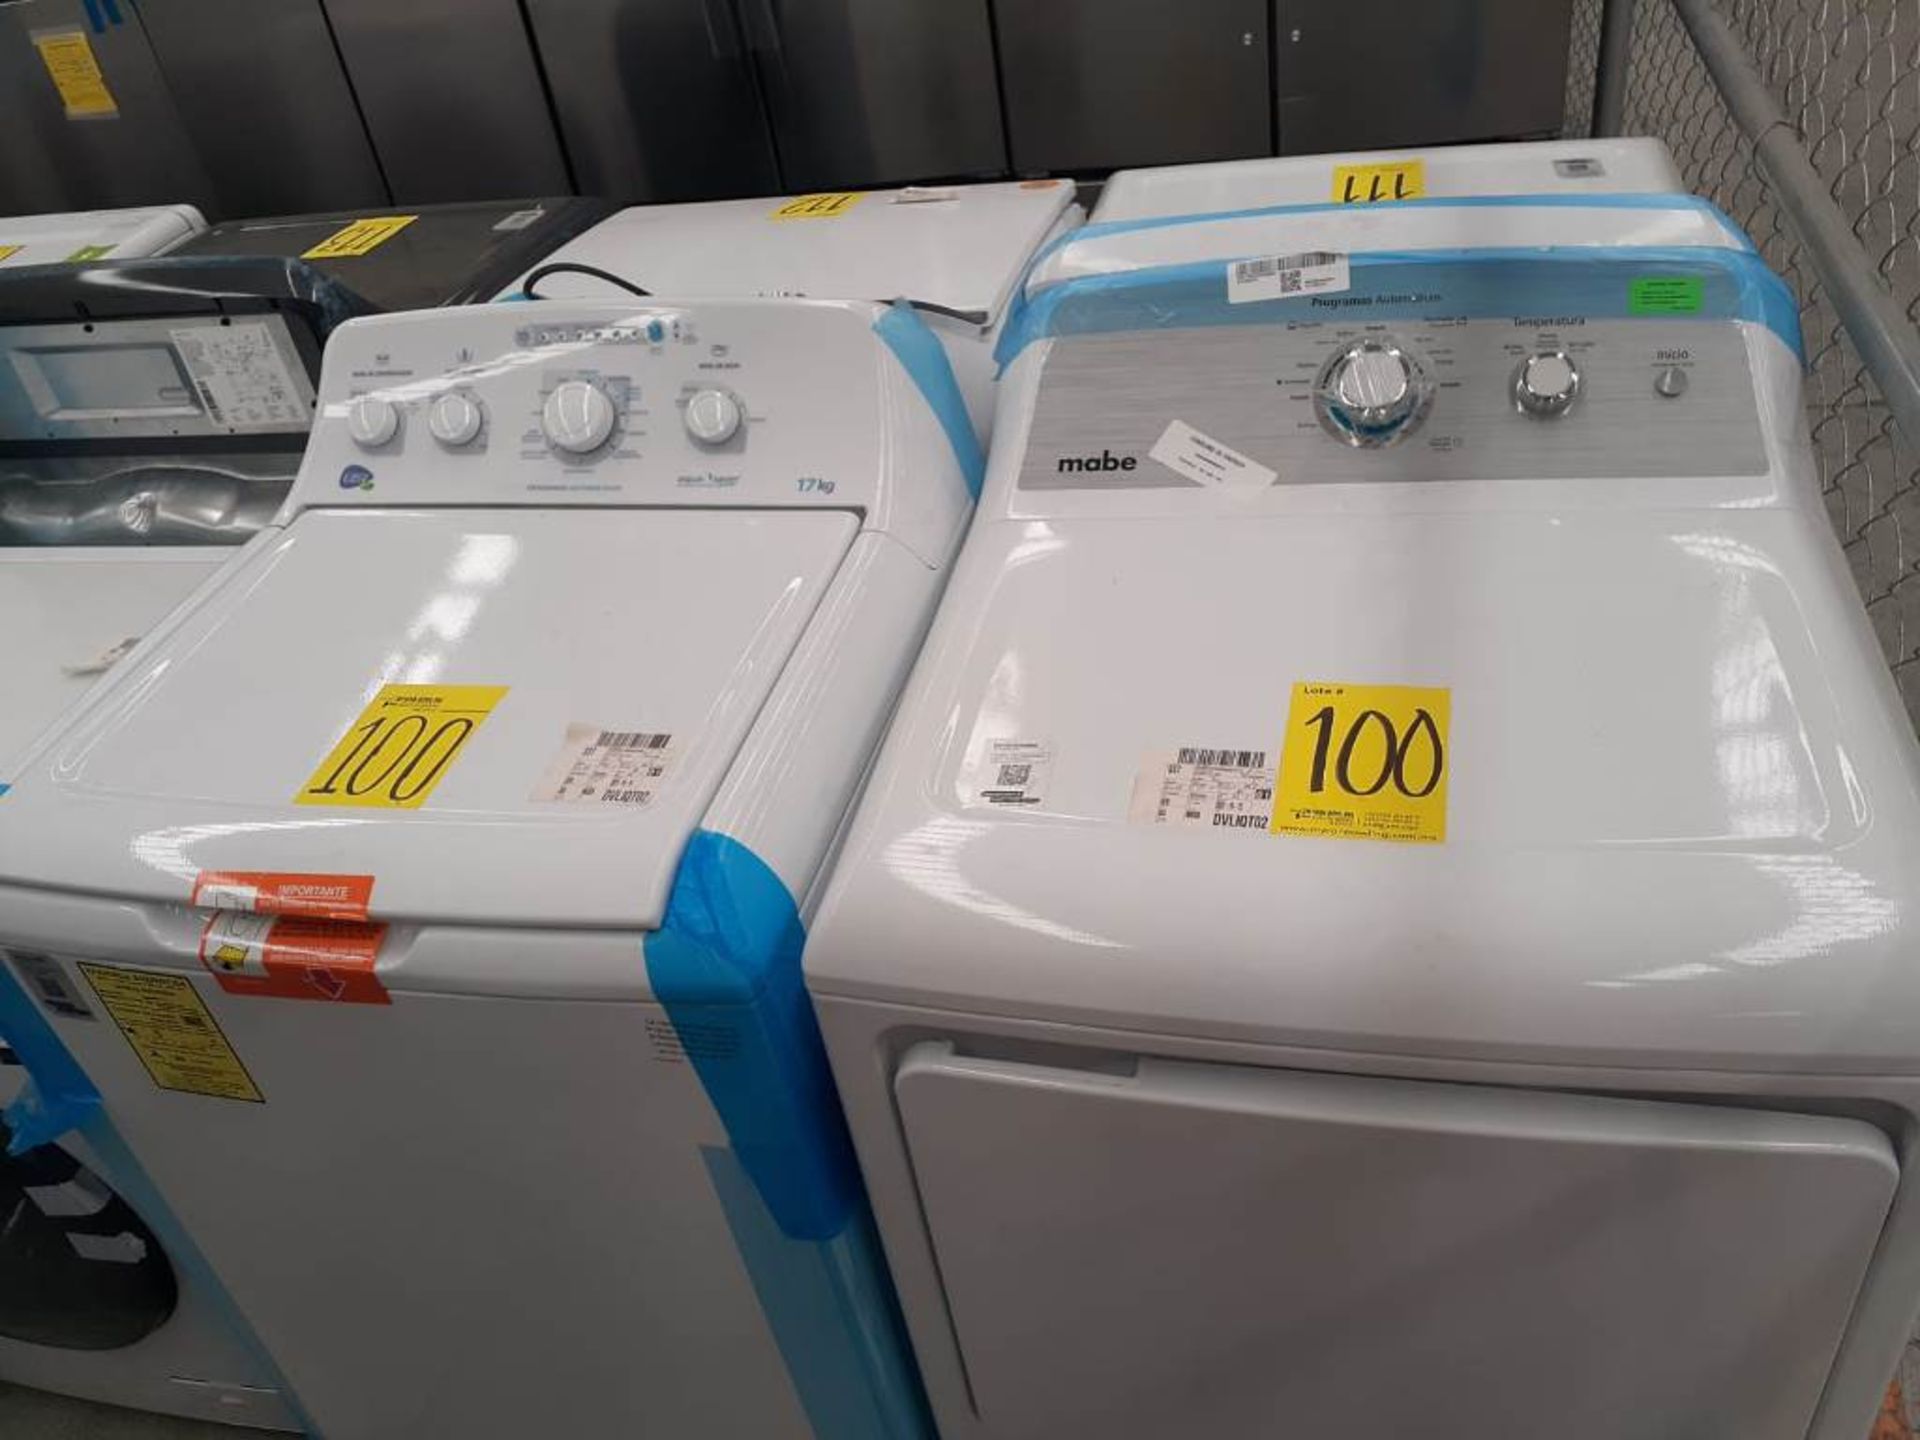 (Equipo nuevo) Lote de lavadora y secadora contiene: 1 Lavadora de 17 KG Marca EASY, Modelo LEA7711